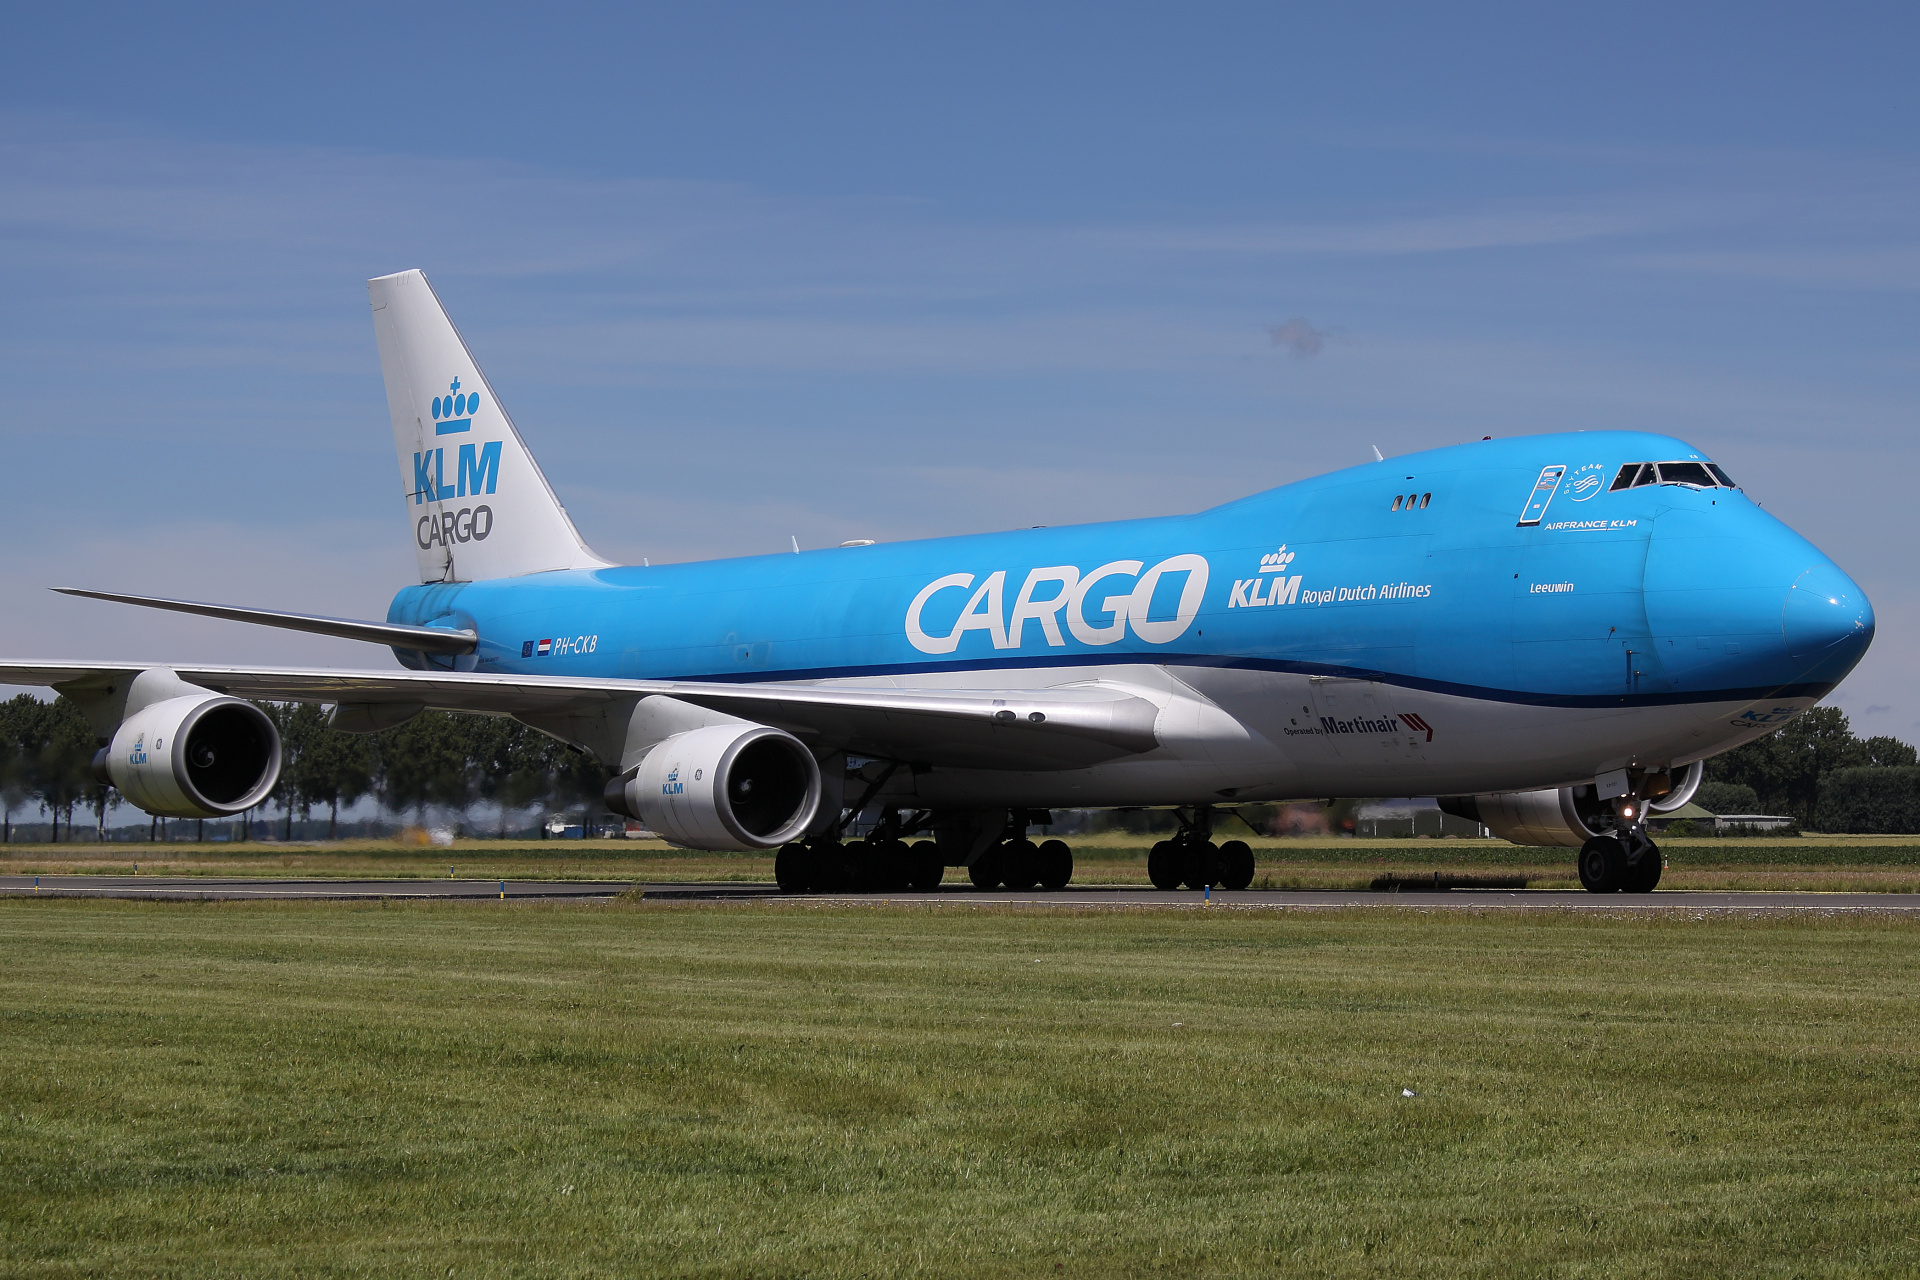 PH-CKB (Martinair) (Samoloty » Spotting na Schiphol » Boeing 747-400F » KLM Cargo)